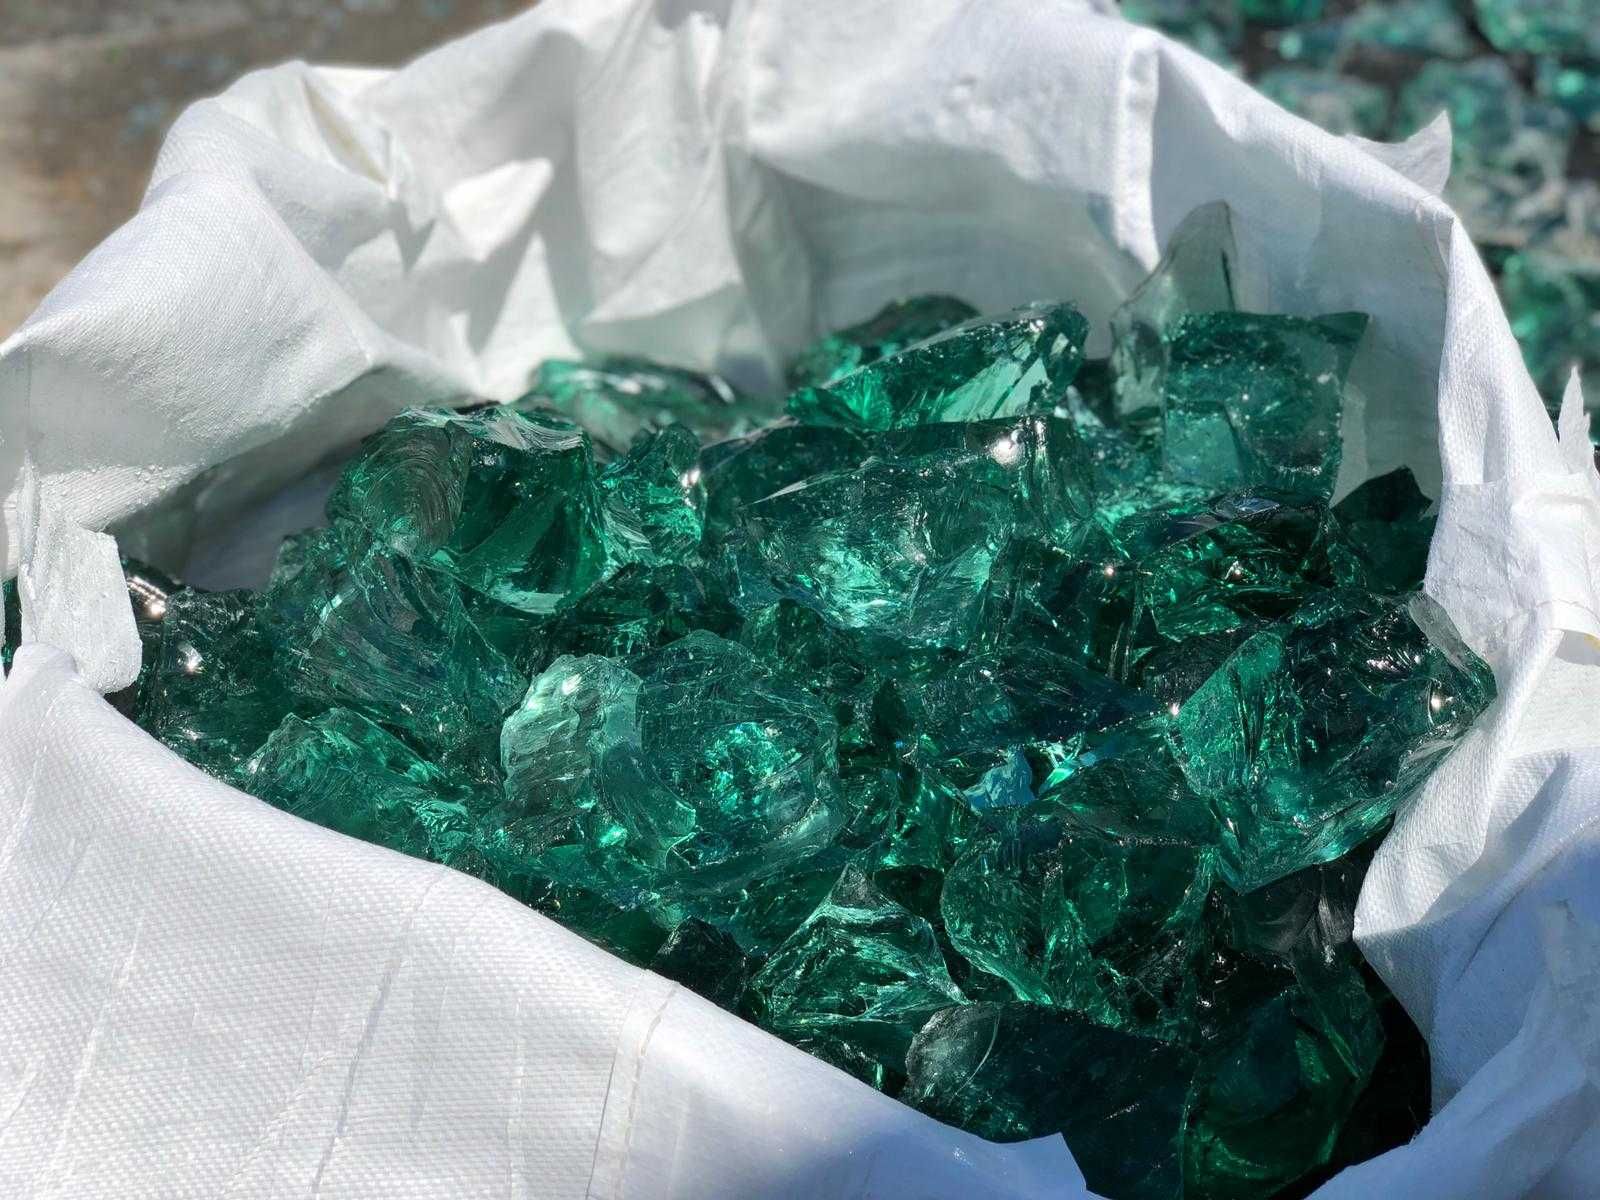 Bryły szklane ogrodowe, turkusowo-zielone, kamień szklany 1 tona